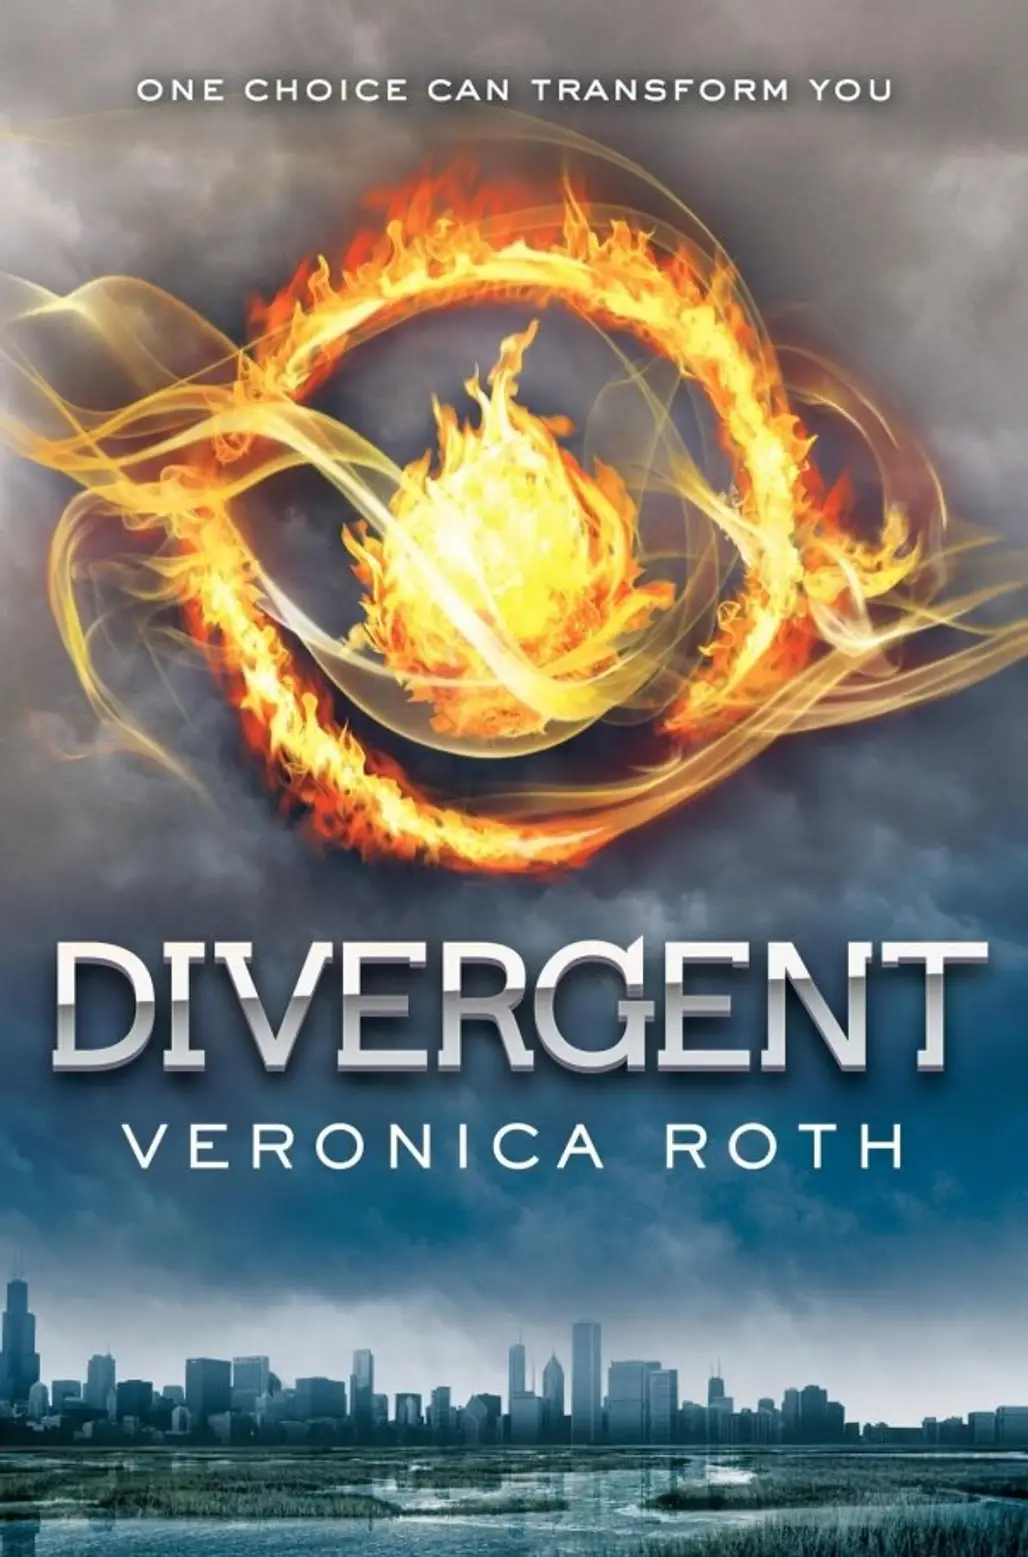 “Divergent”